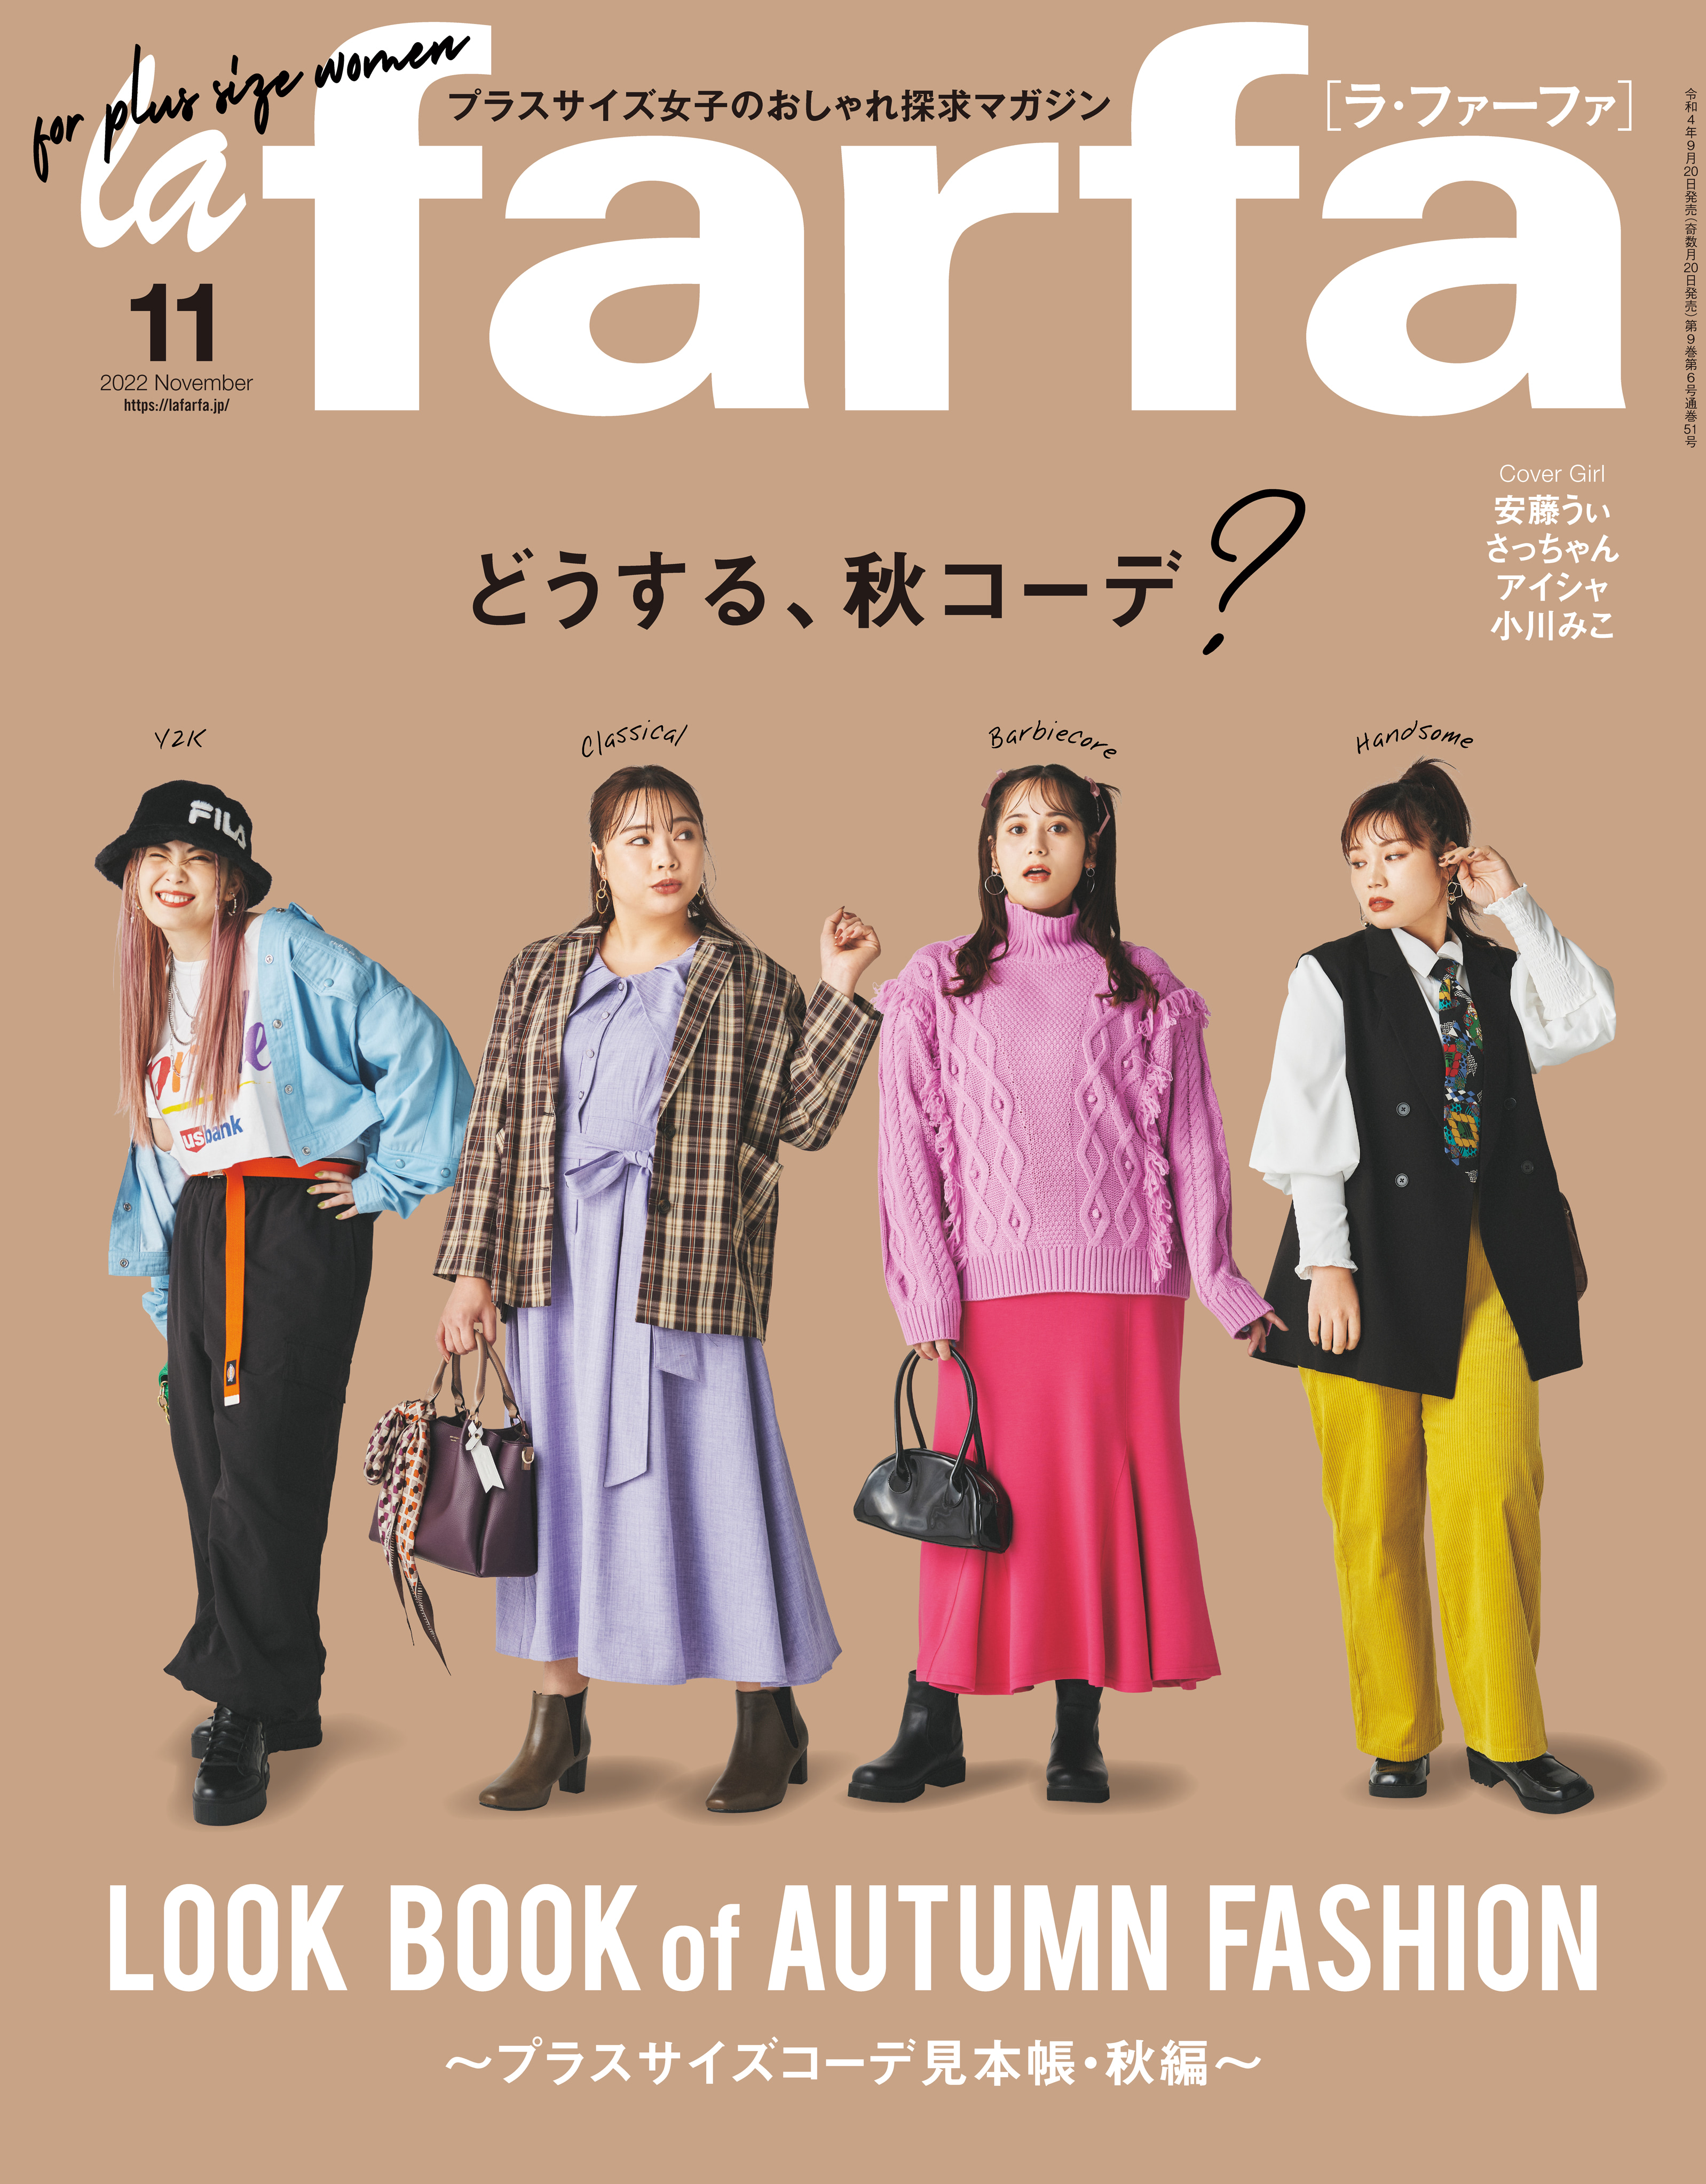 9月20日(火)発売 文友舎『lafarfa 11月号』にジョレンクリームブリーチを掲載して頂きました。